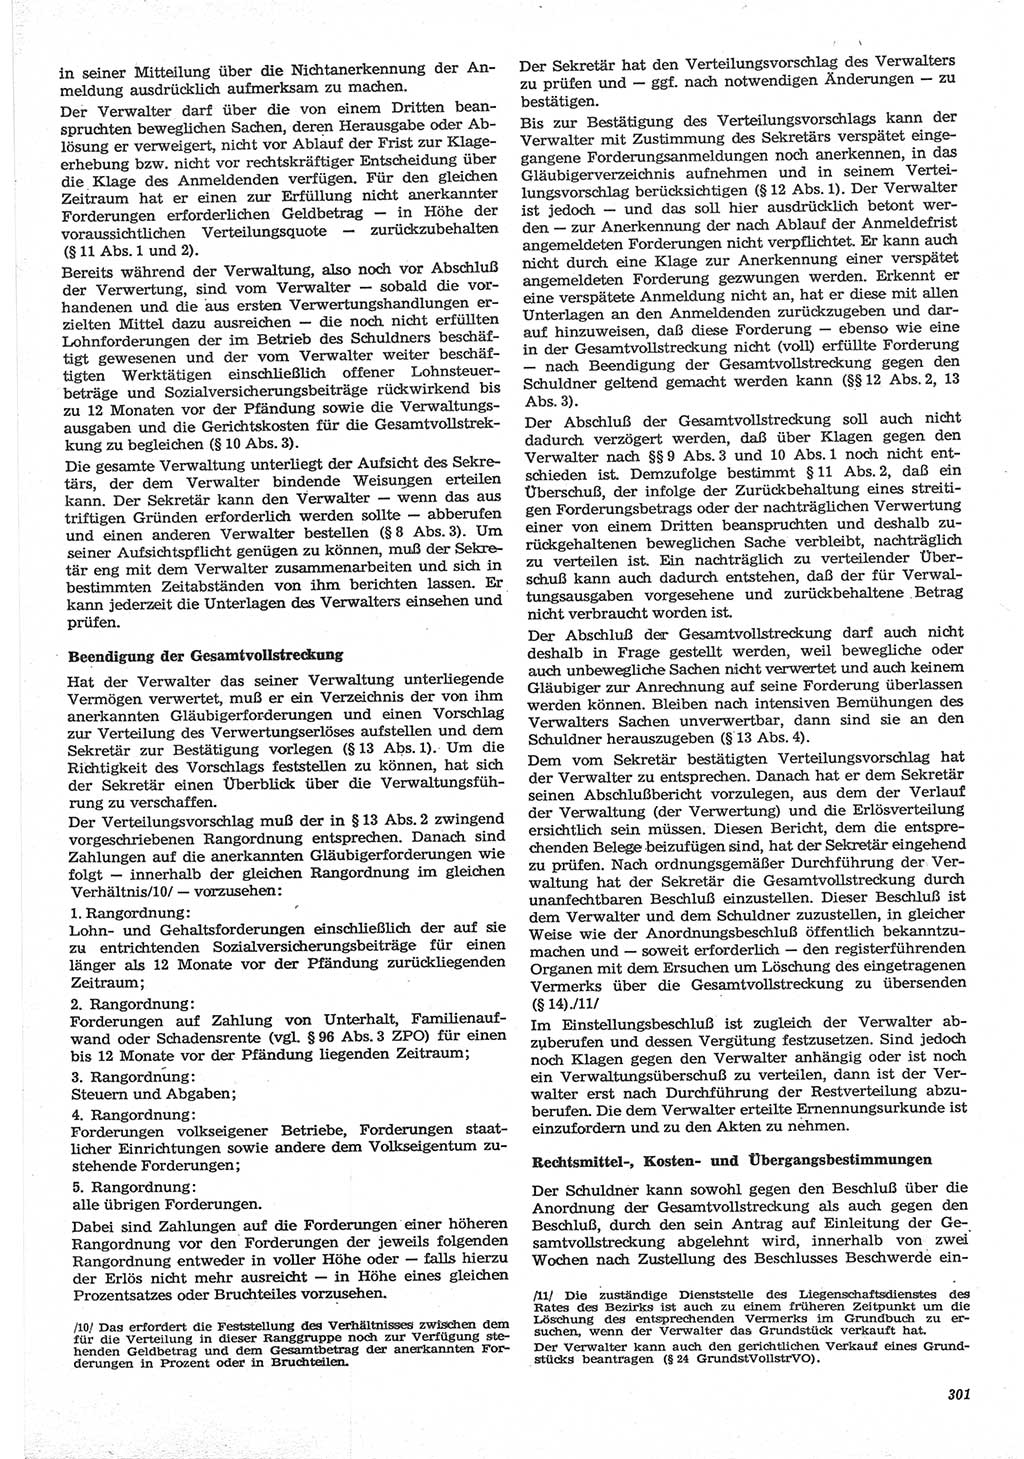 Neue Justiz (NJ), Zeitschrift für Recht und Rechtswissenschaft-Zeitschrift, sozialistisches Recht und Gesetzlichkeit, 31. Jahrgang 1977, Seite 301 (NJ DDR 1977, S. 301)